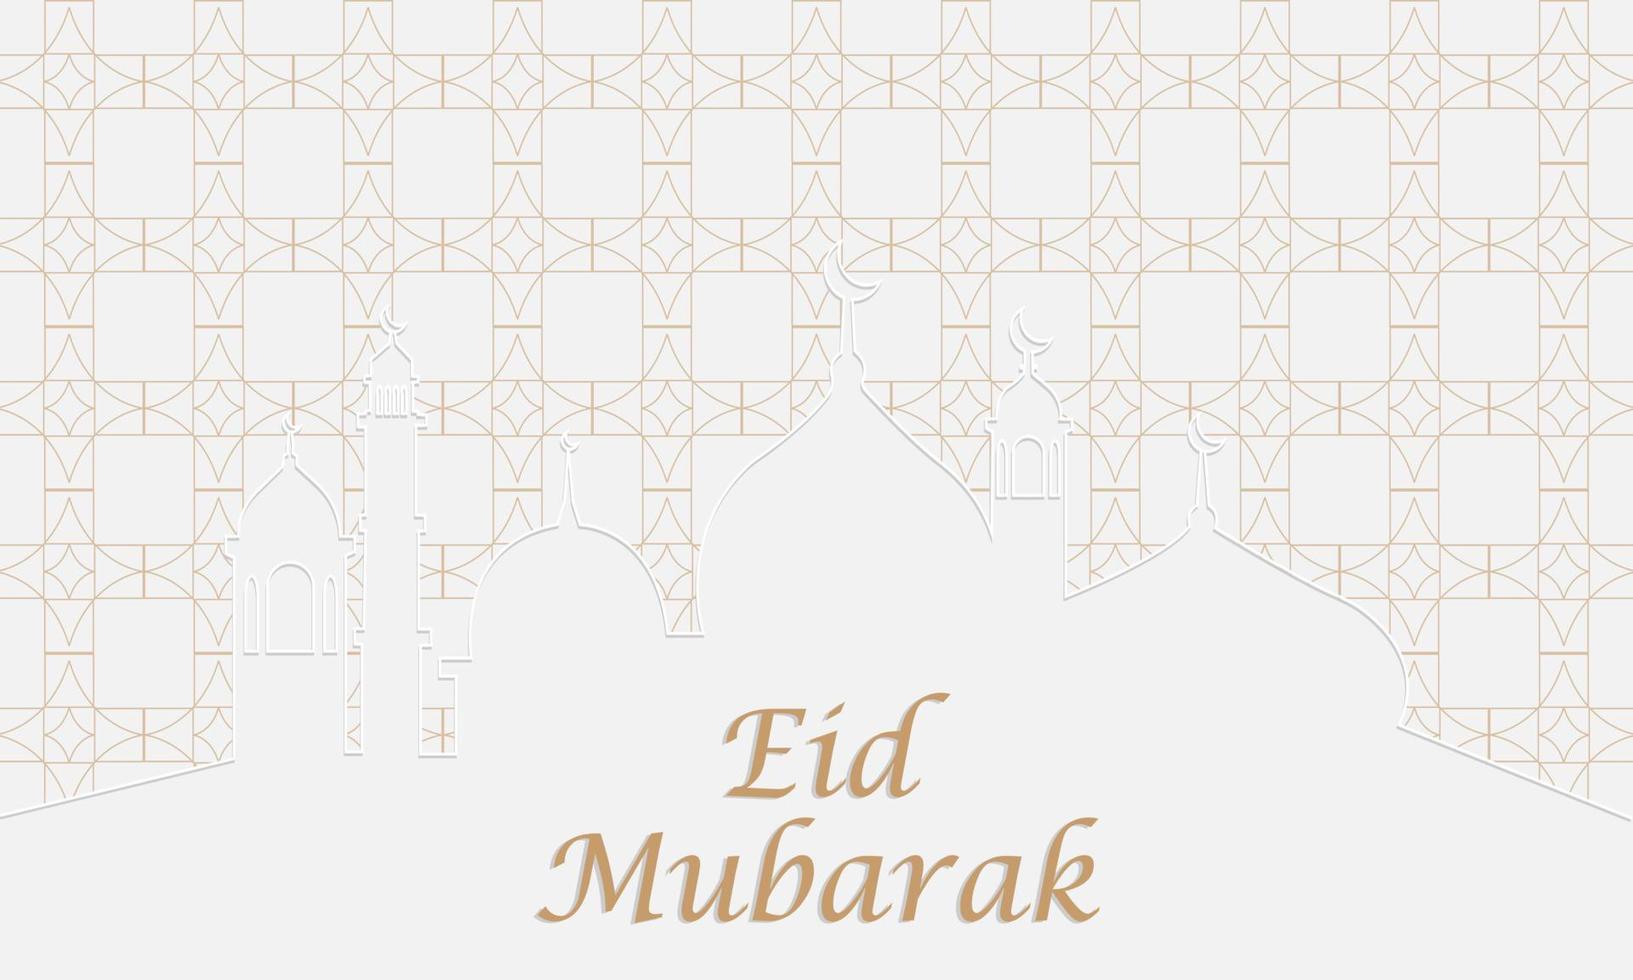 bellissimo sfondo eid mubarak con motivo arabo grafica vettoriale design premium vector